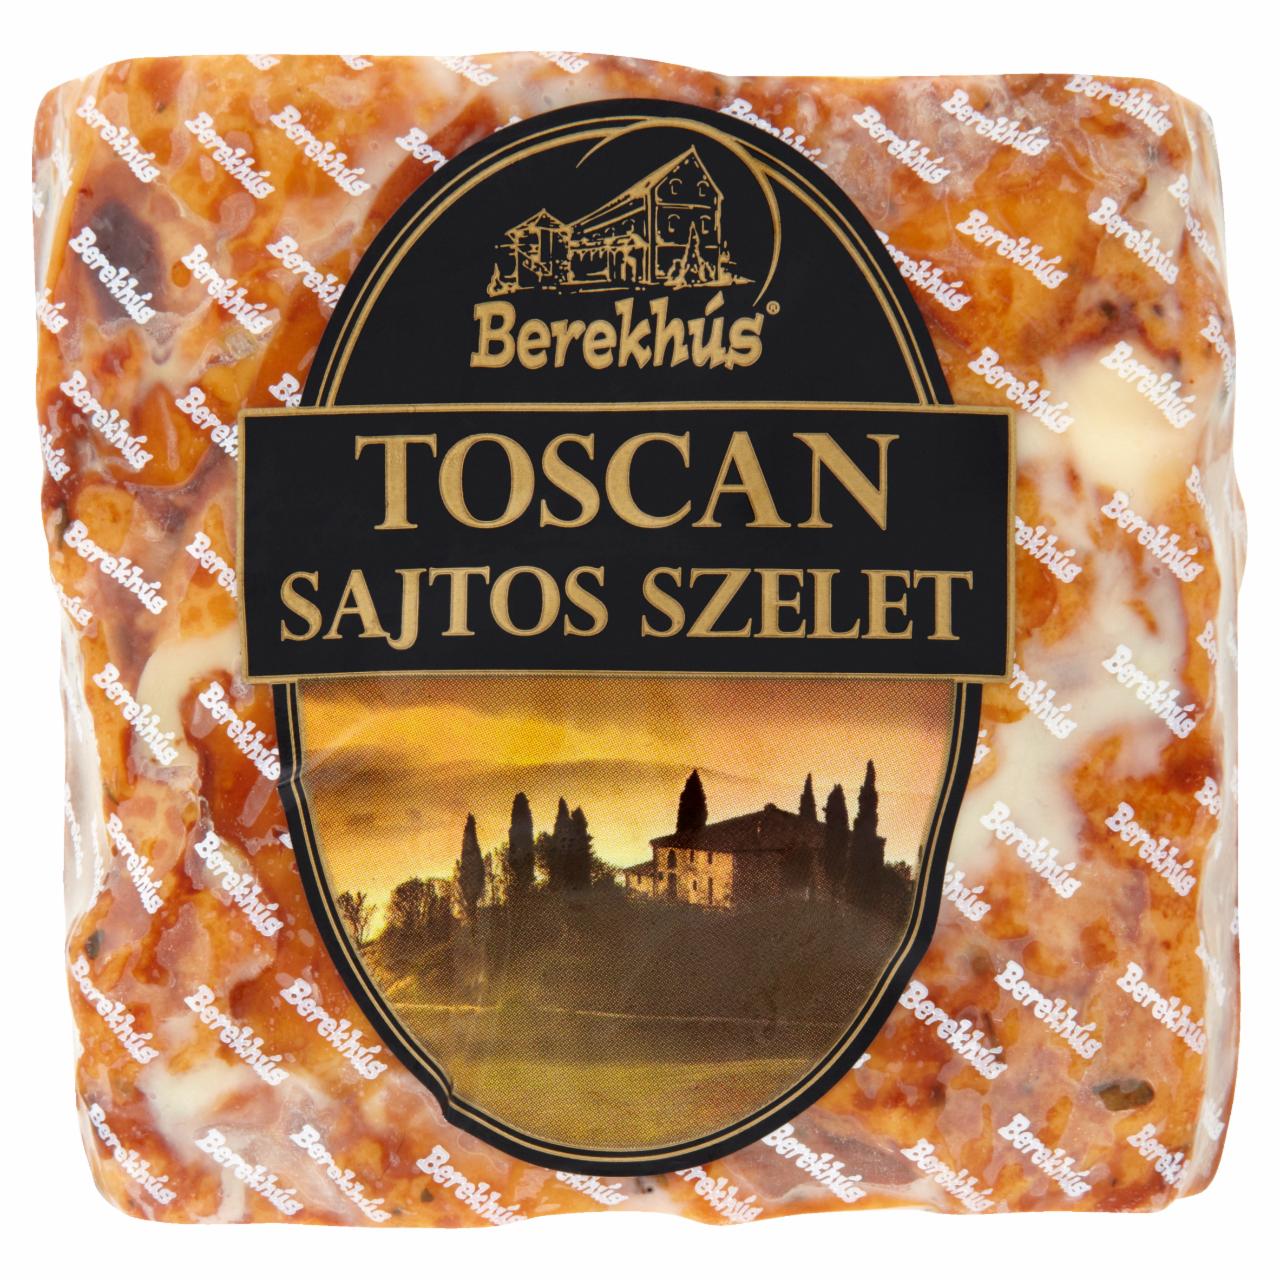 Képek - Berek Toscan sajtos szelet